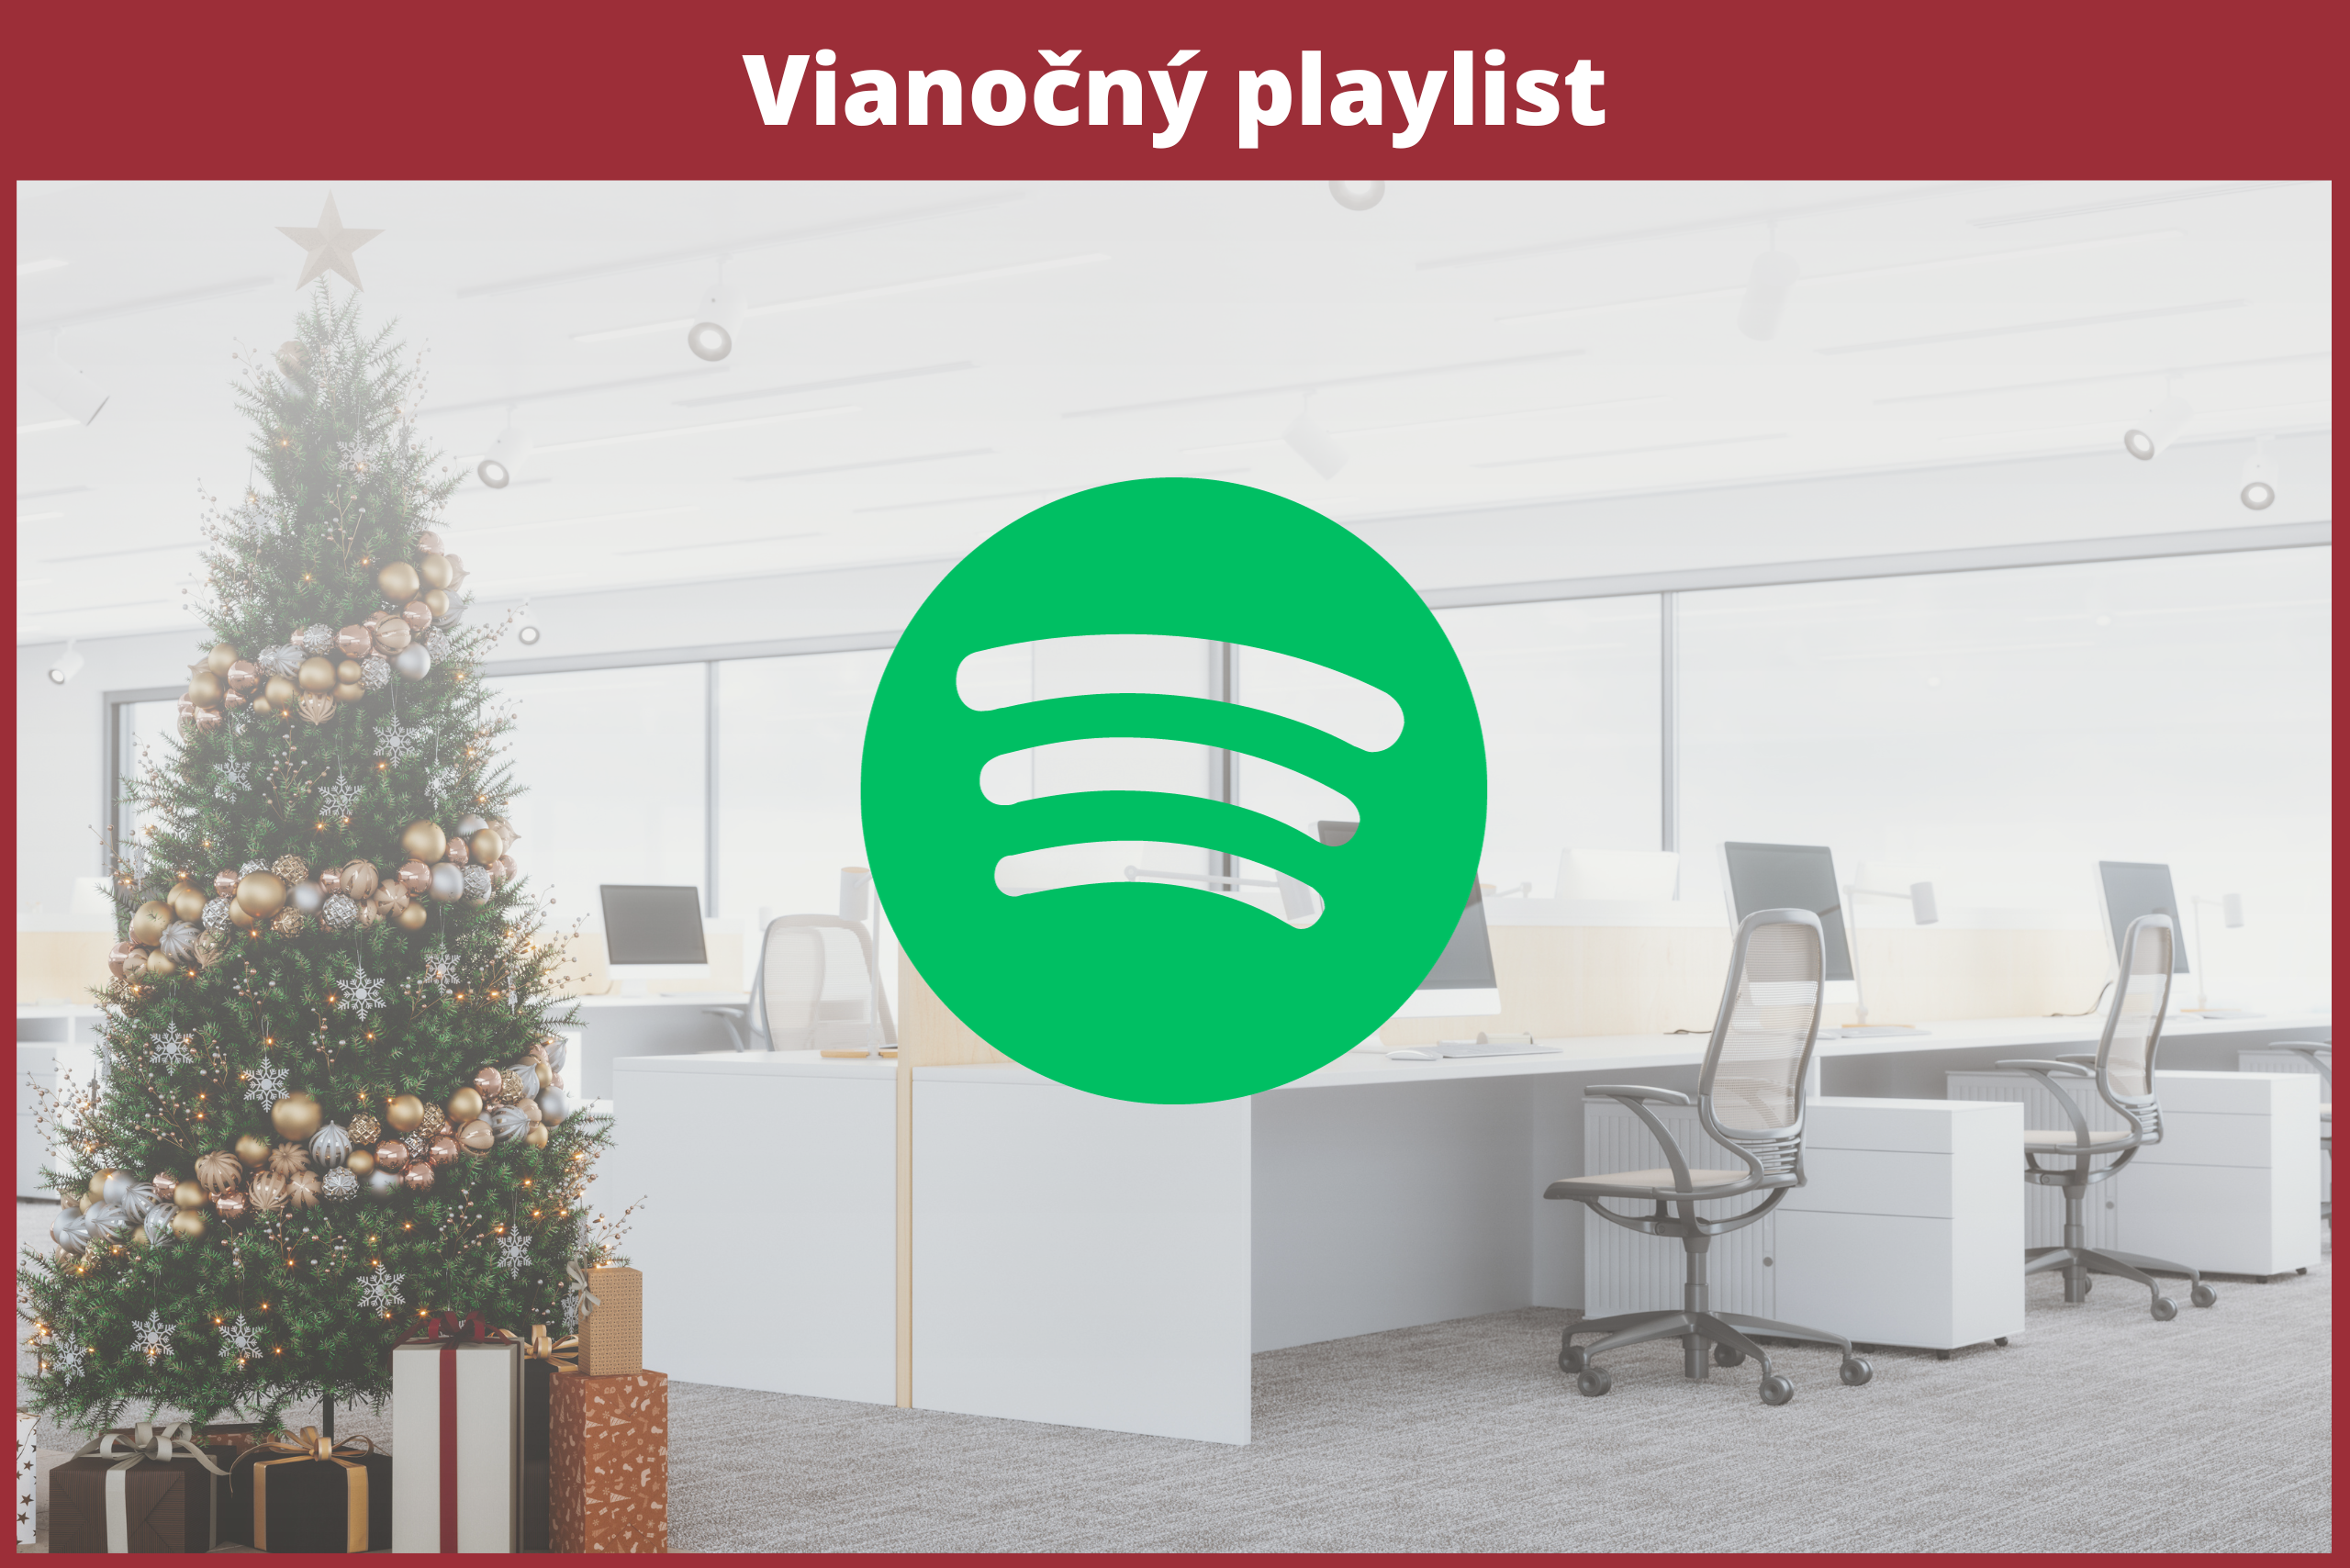 Vianočný playlist - Spotify